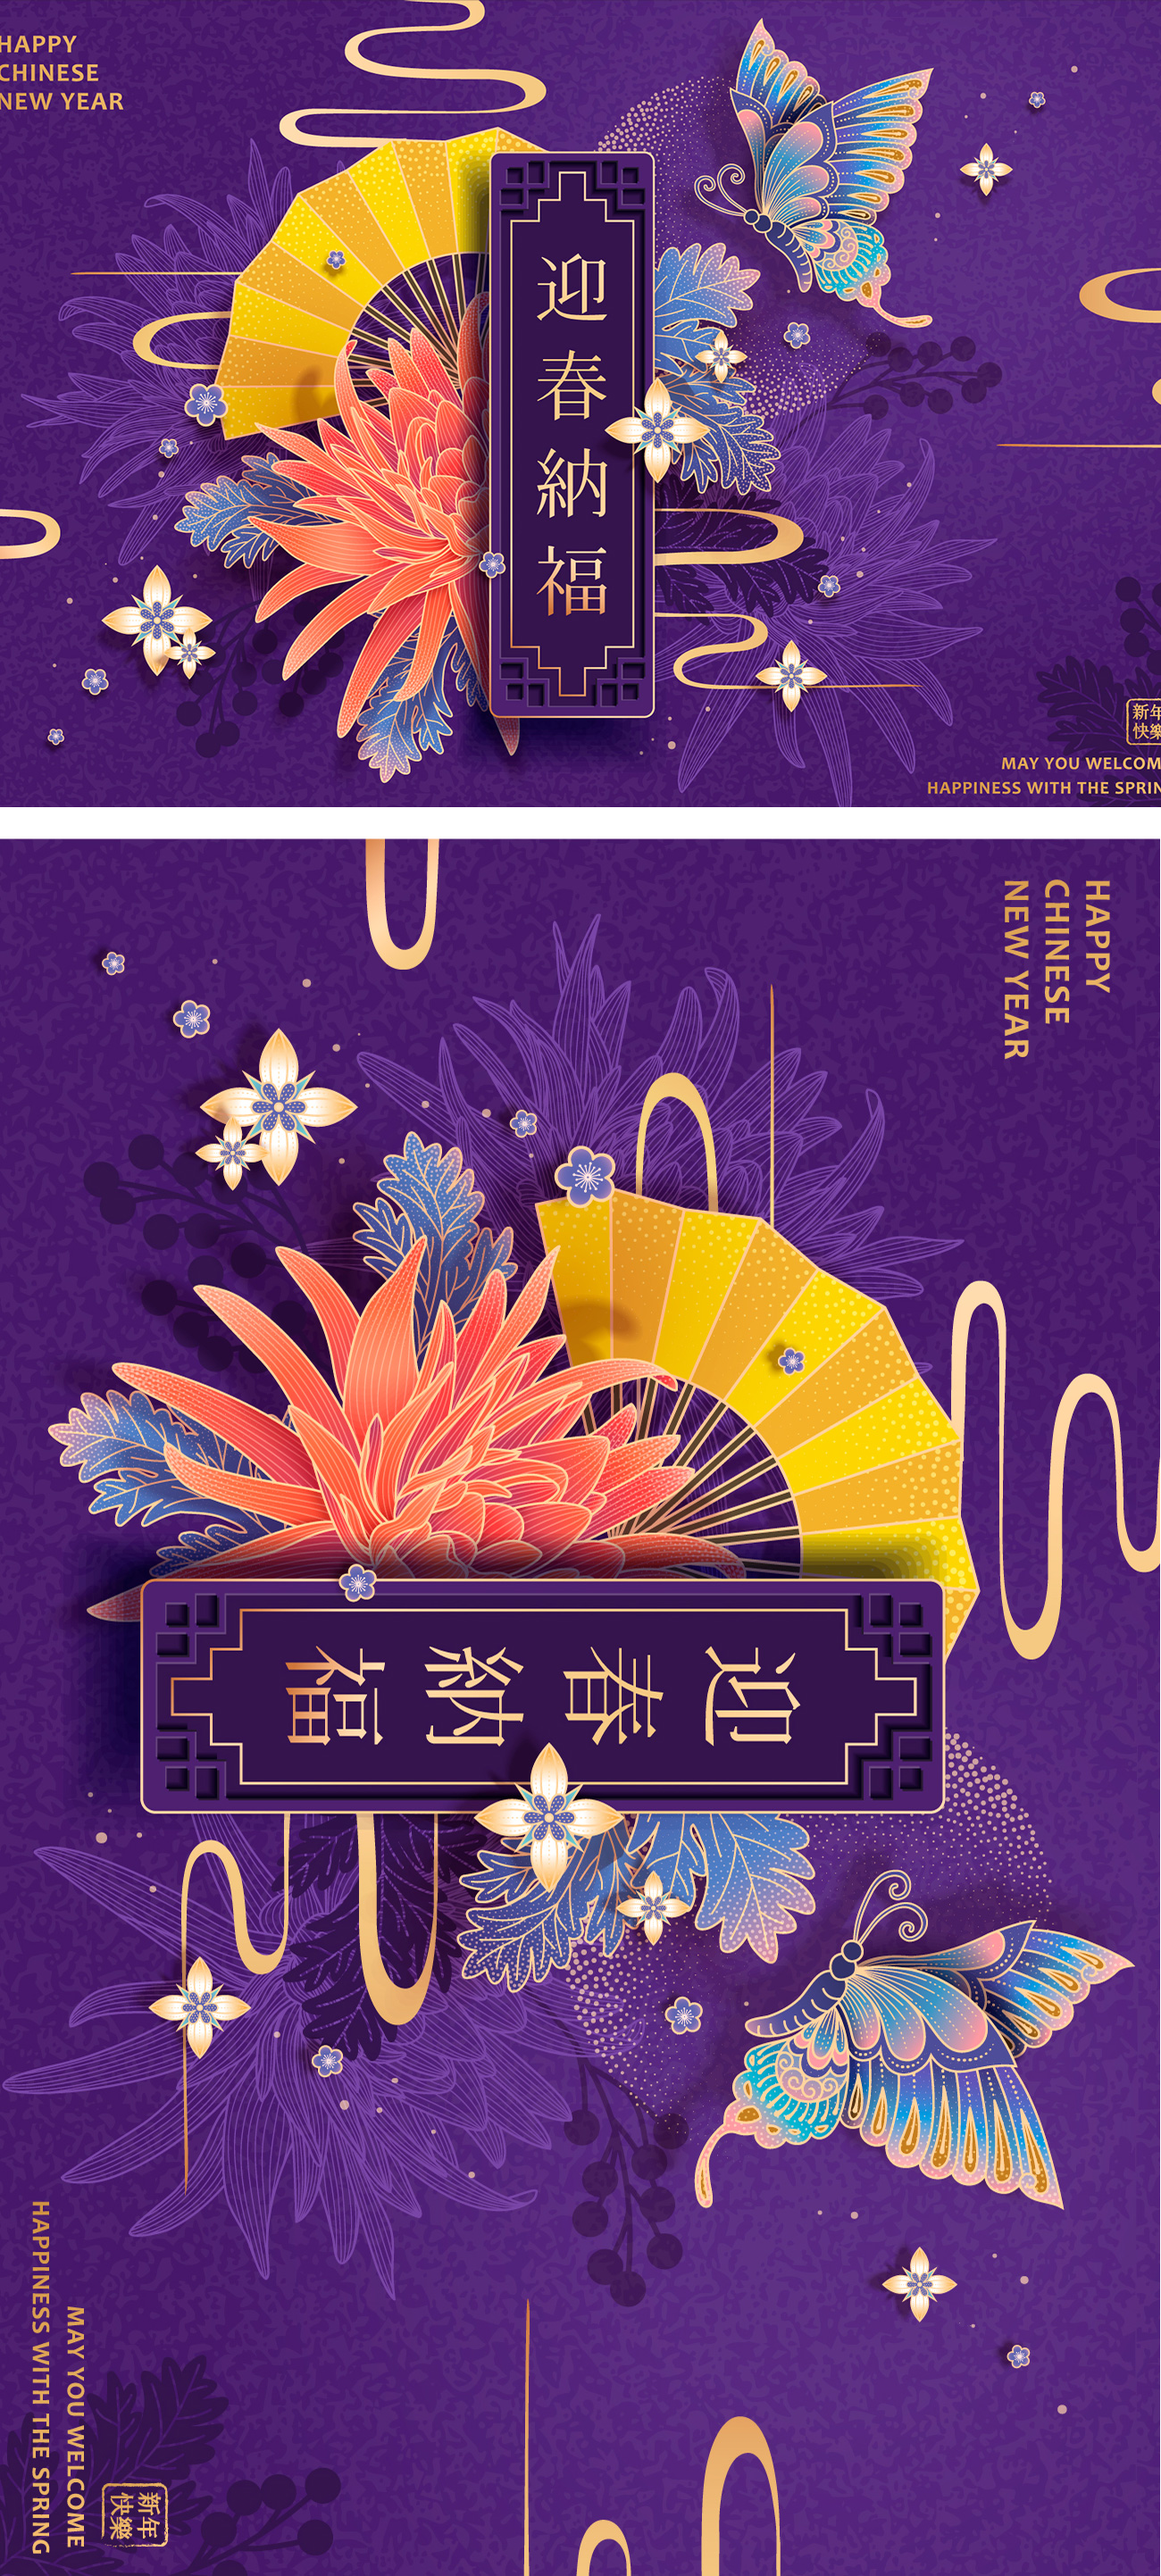 【迎春纳福】2019年农历新年传统年画迎新矢量海报素材